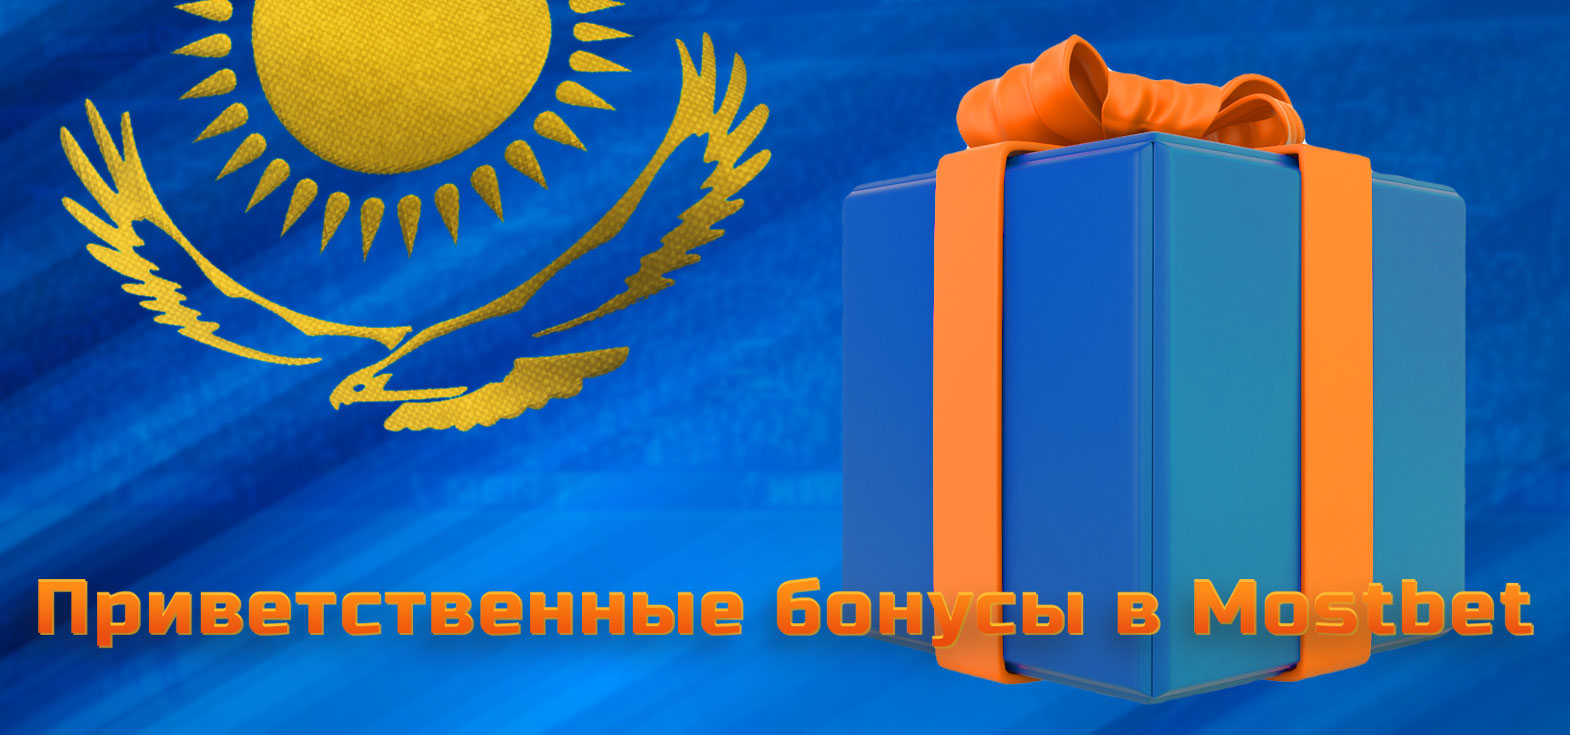 Все доступные приветственные бонусы за создание нового аккаунта в БК Mostbet для игроков из Казахстана.